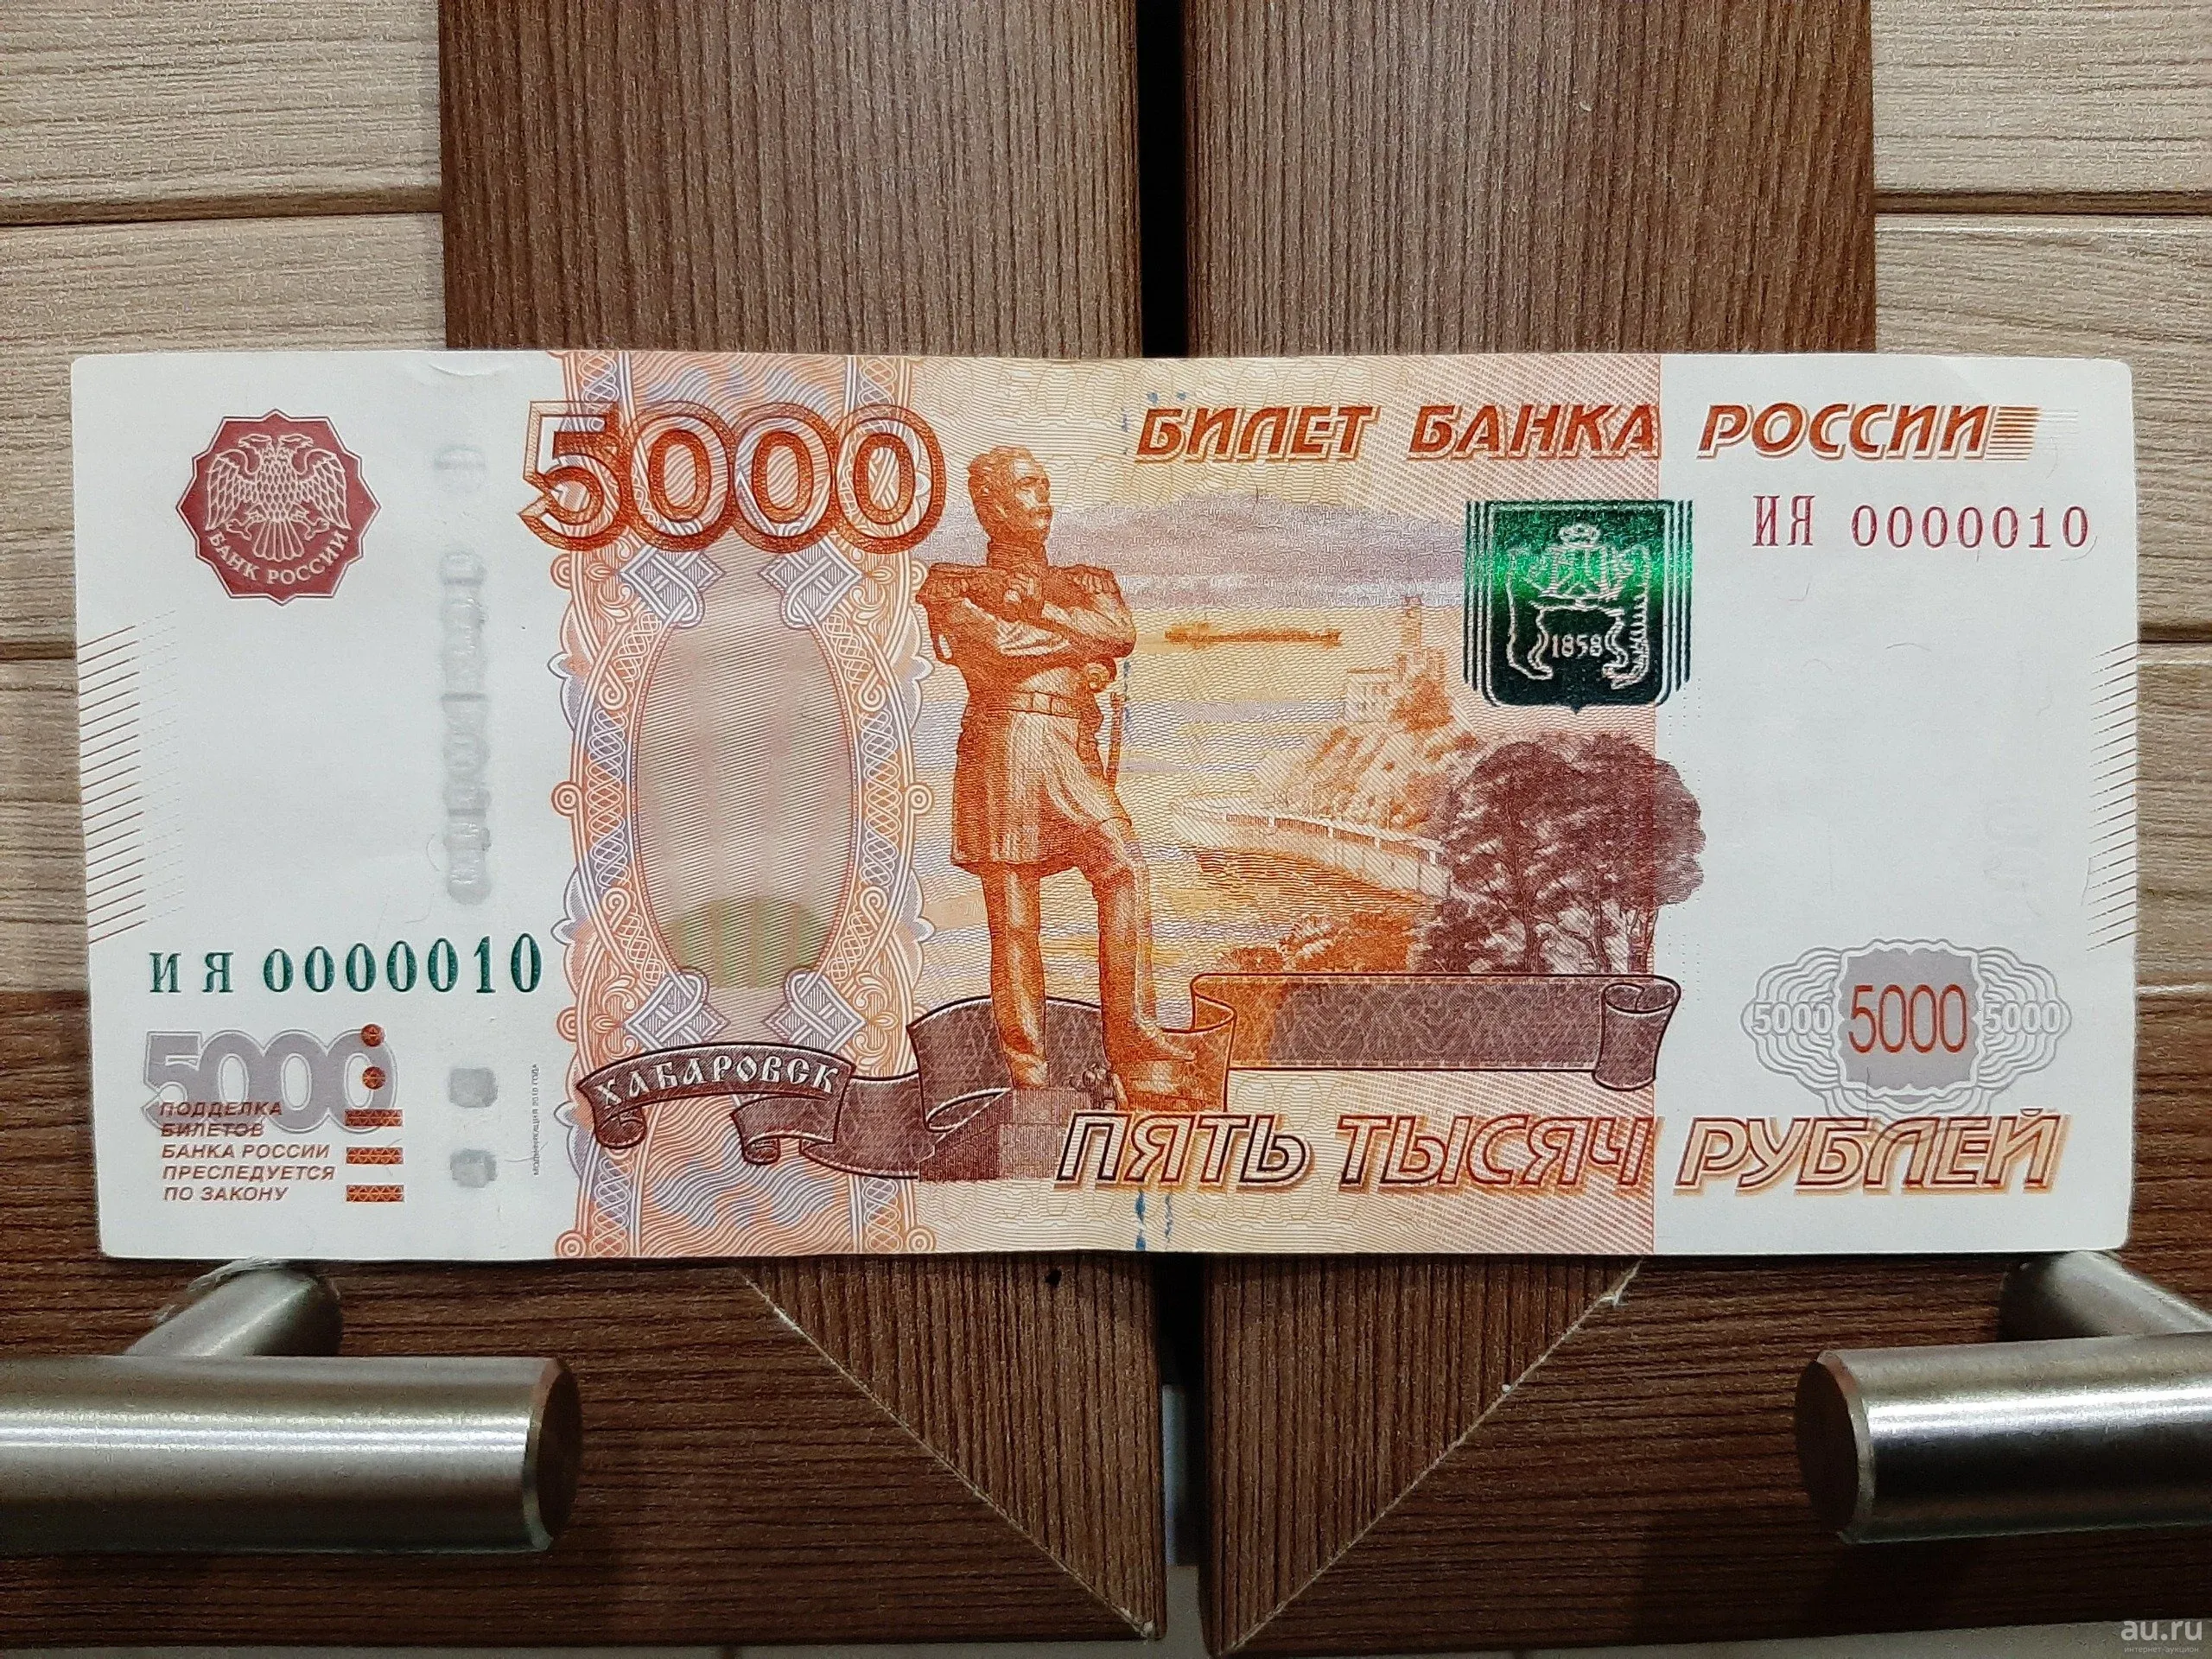 5 тыс рублей на новый год